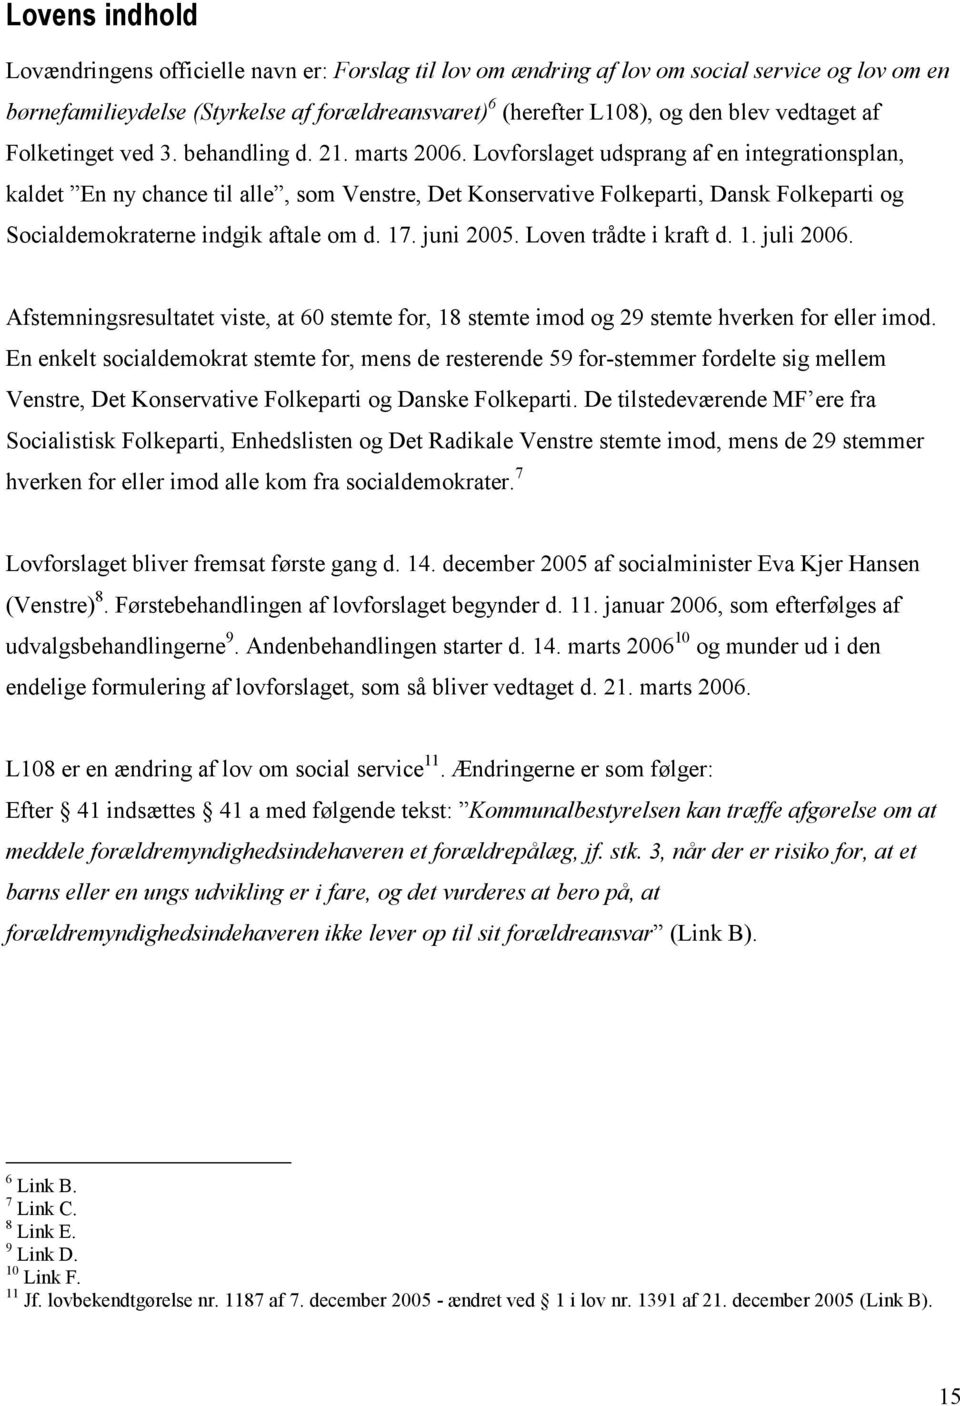 Lovforslaget udsprang af en integrationsplan, kaldet En ny chance til alle, som Venstre, Det Konservative Folkeparti, Dansk Folkeparti og Socialdemokraterne indgik aftale om d. 17. juni 2005.